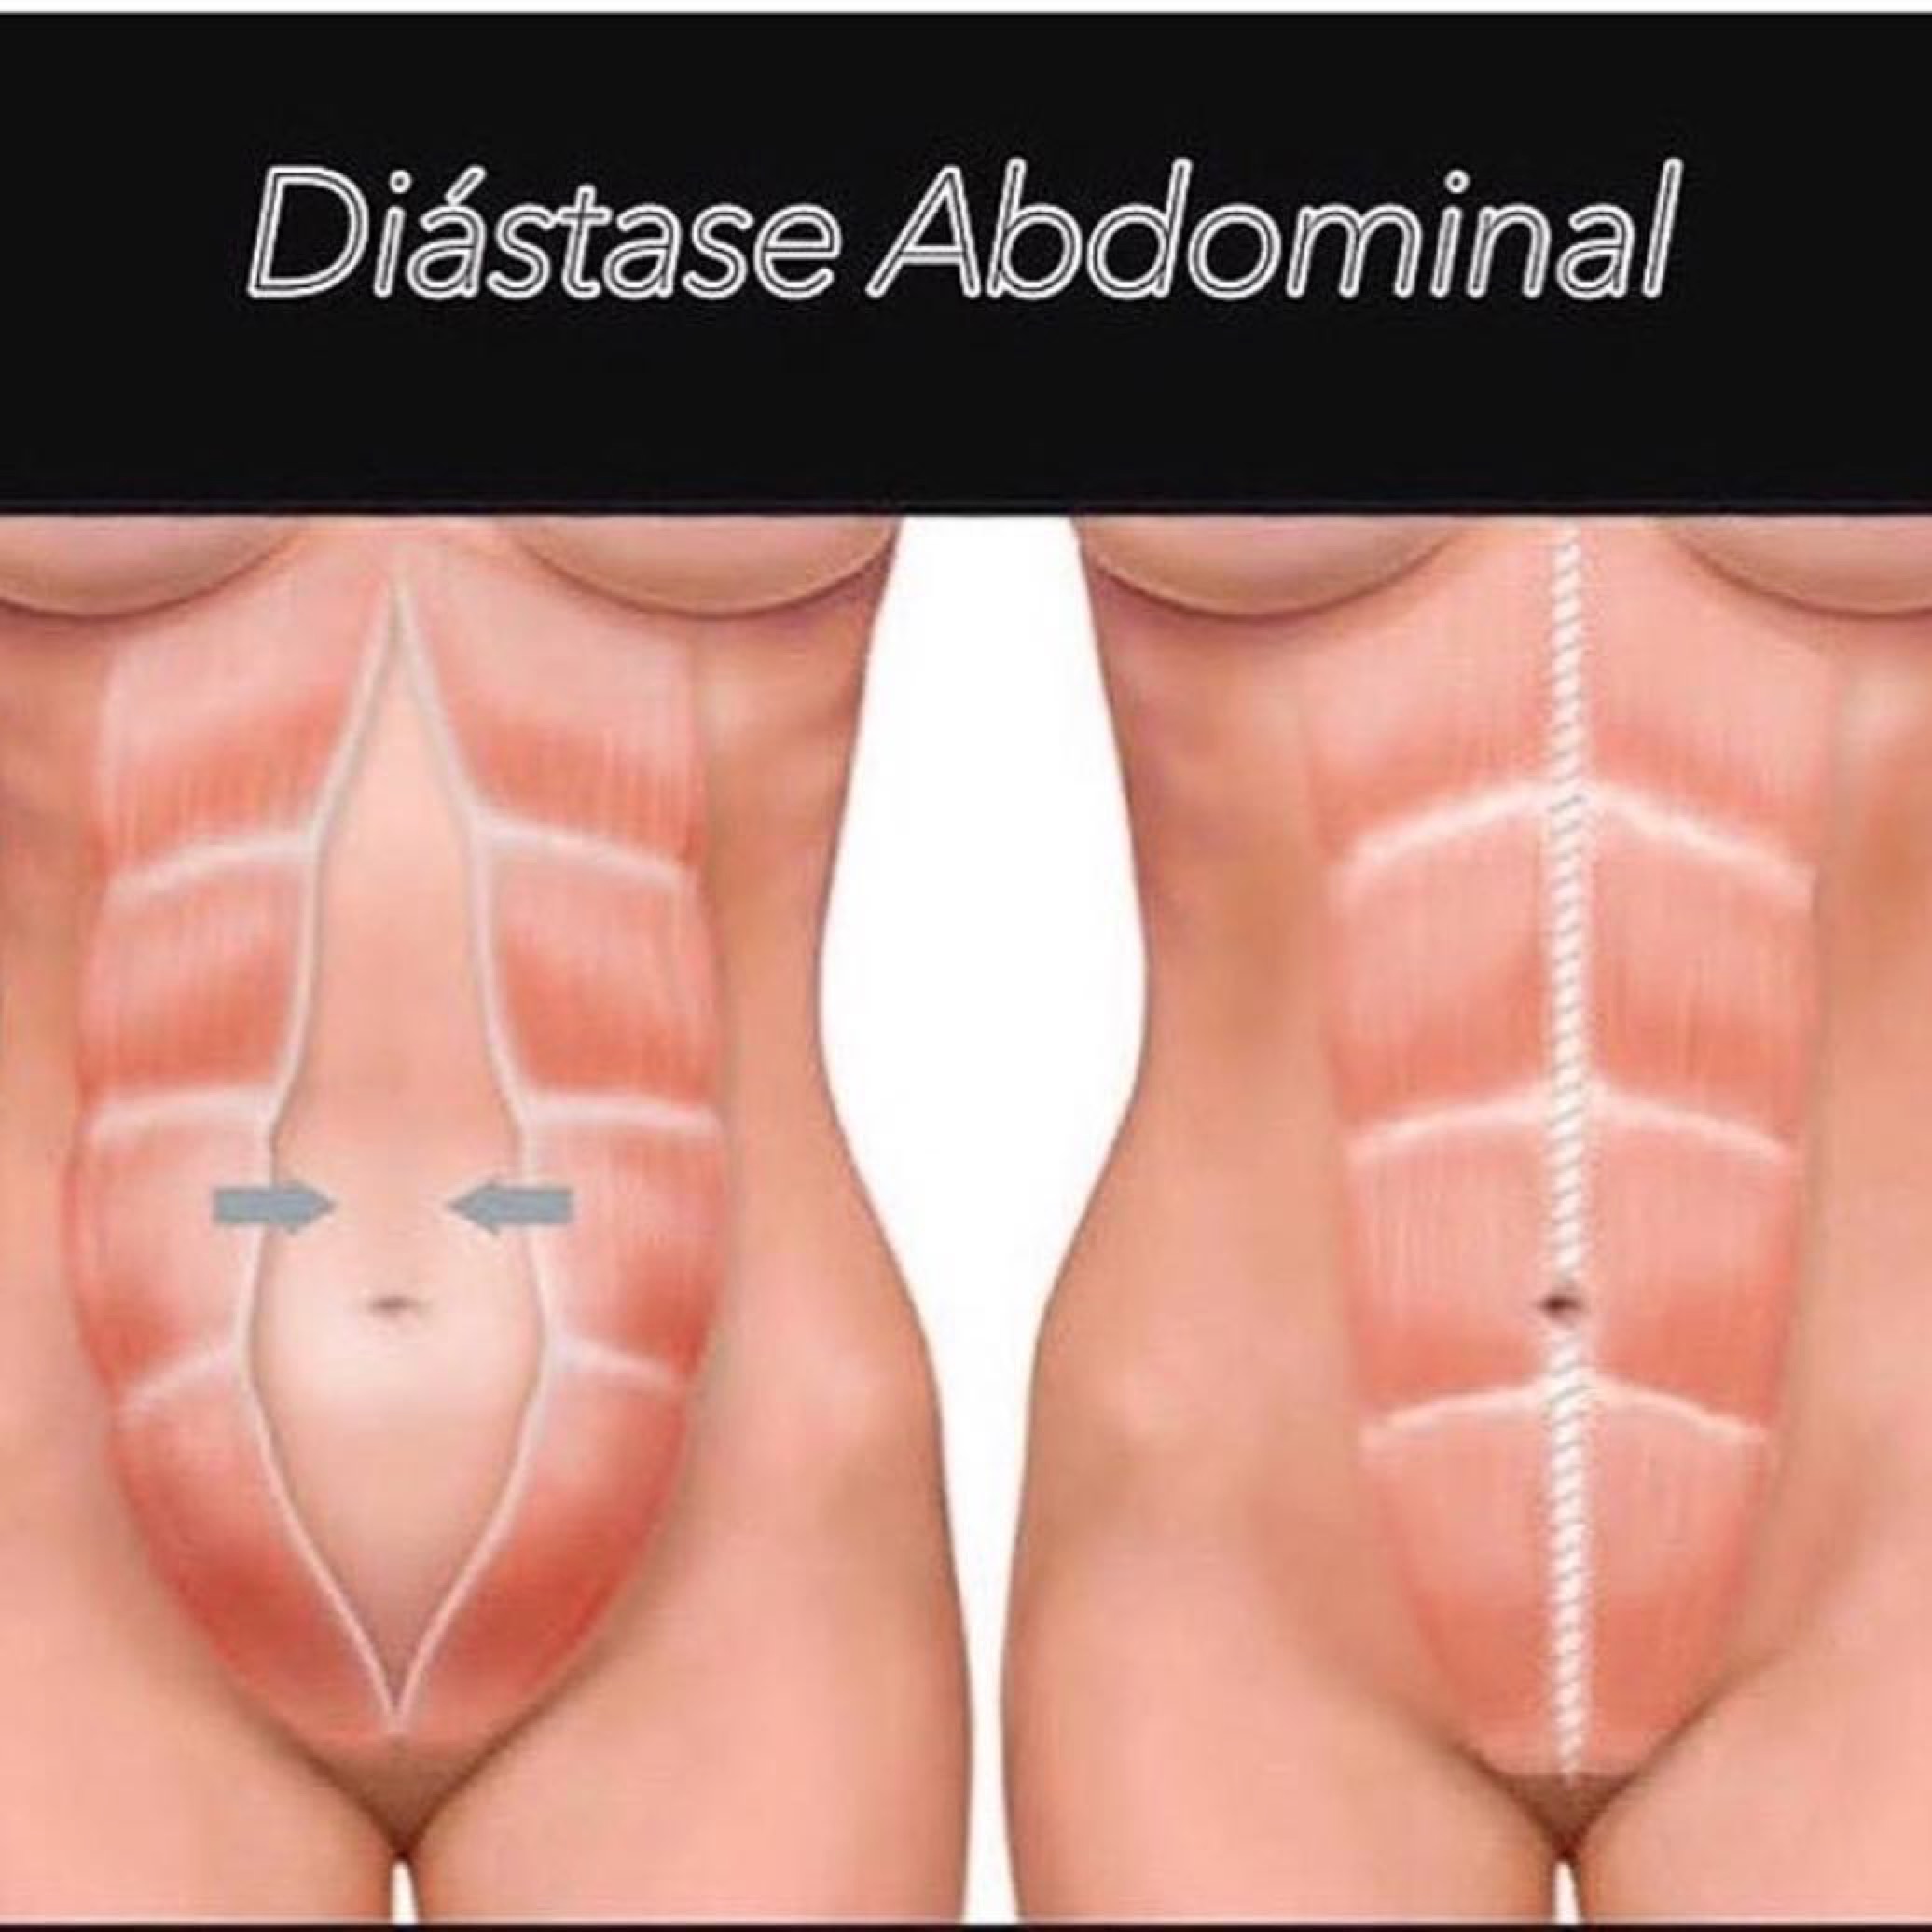 Cirurgia plástica do abdomen: abdominoplastia - Dra. Daniele Pace